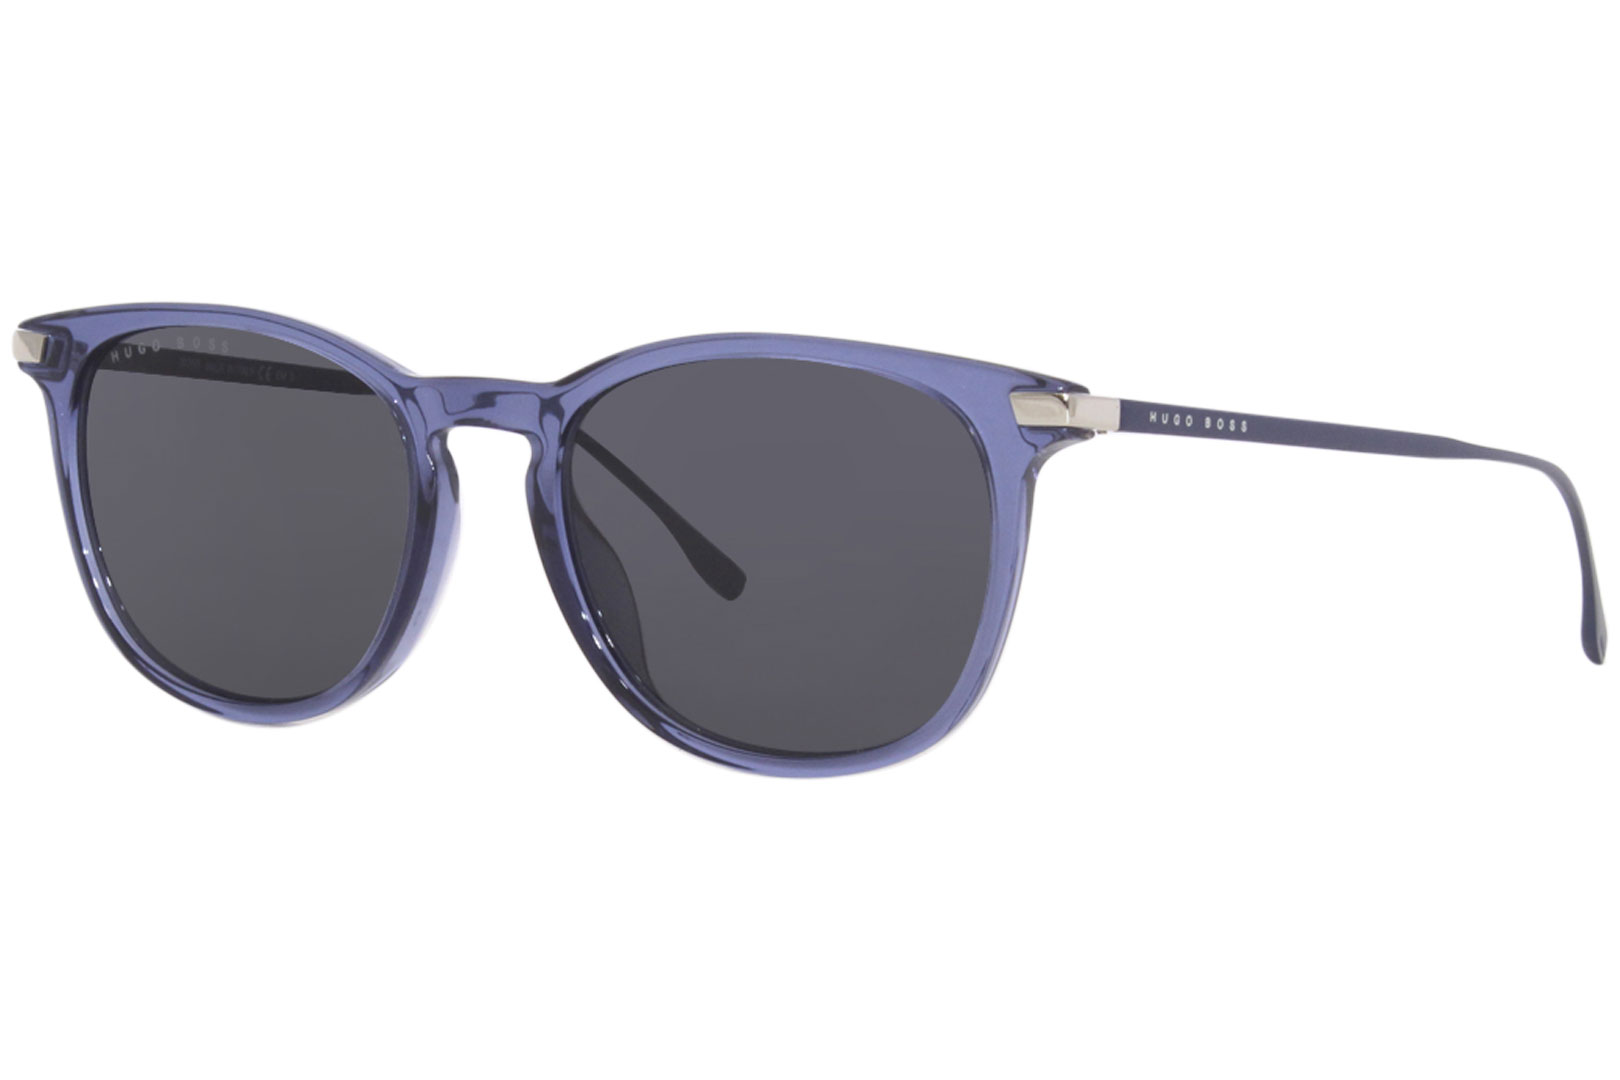 Hugo Boss 0987/S Sunglasses Men's Square Shape | JoyLot.com